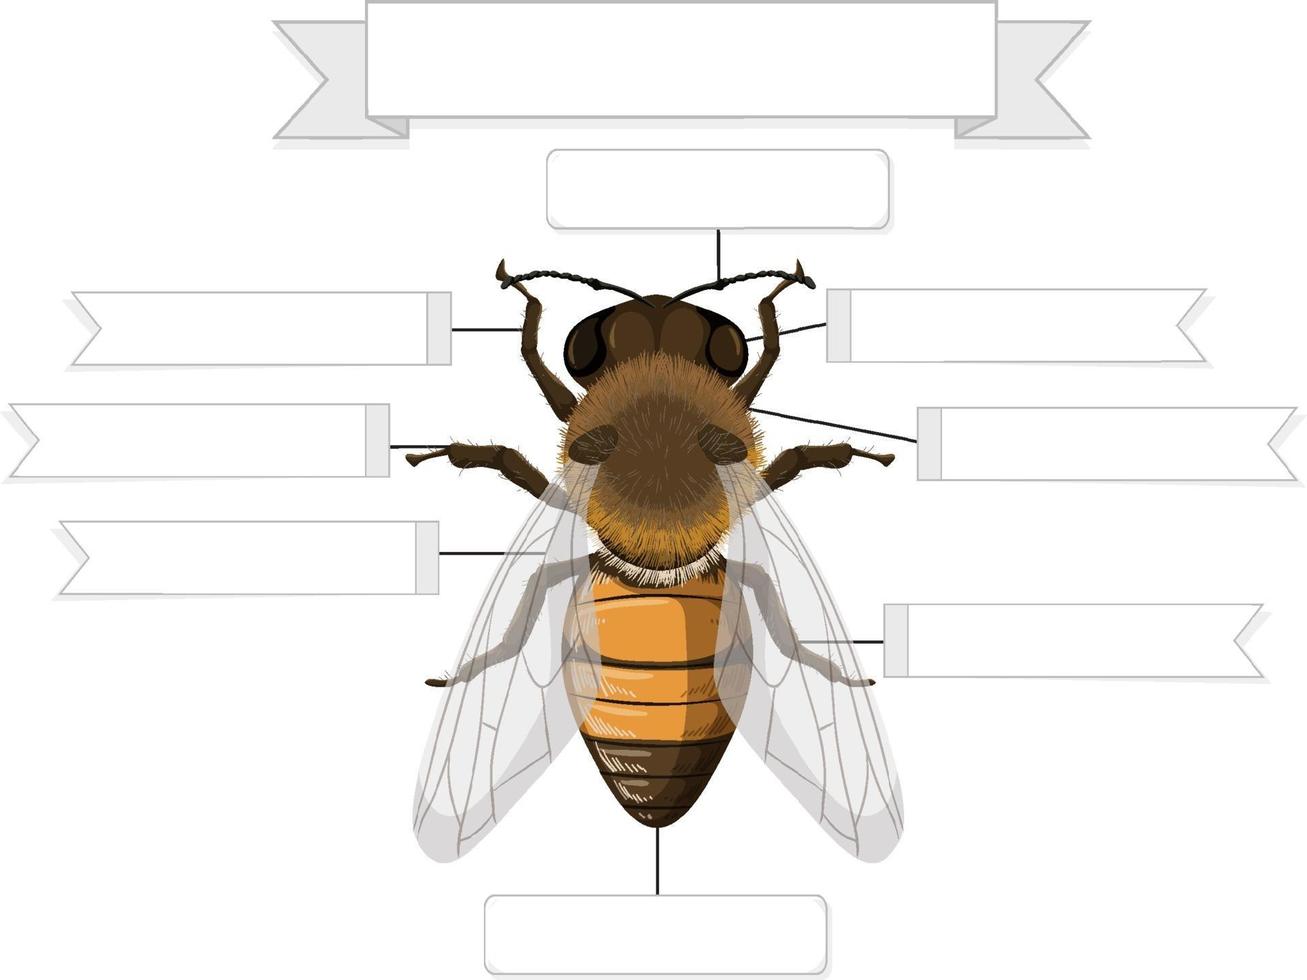 Externe Anatomie einer Biene Arbeitsblatt vektor